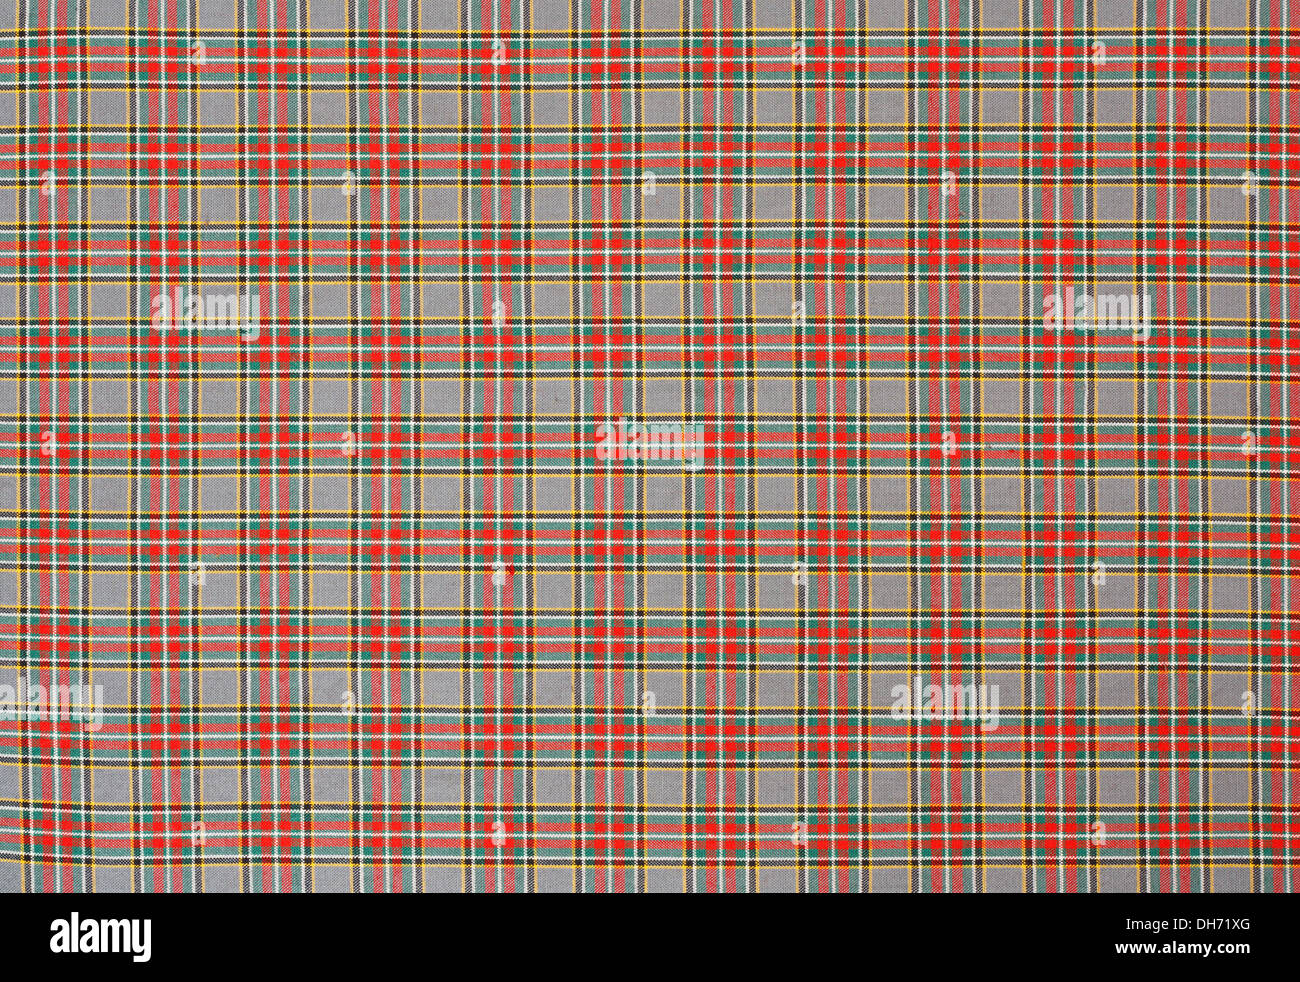 Schottischen Tartan Hintergrund ein aufgegebenes Plaid Muster mit roten, grünen und gelben Farben zu weben. Stockfoto